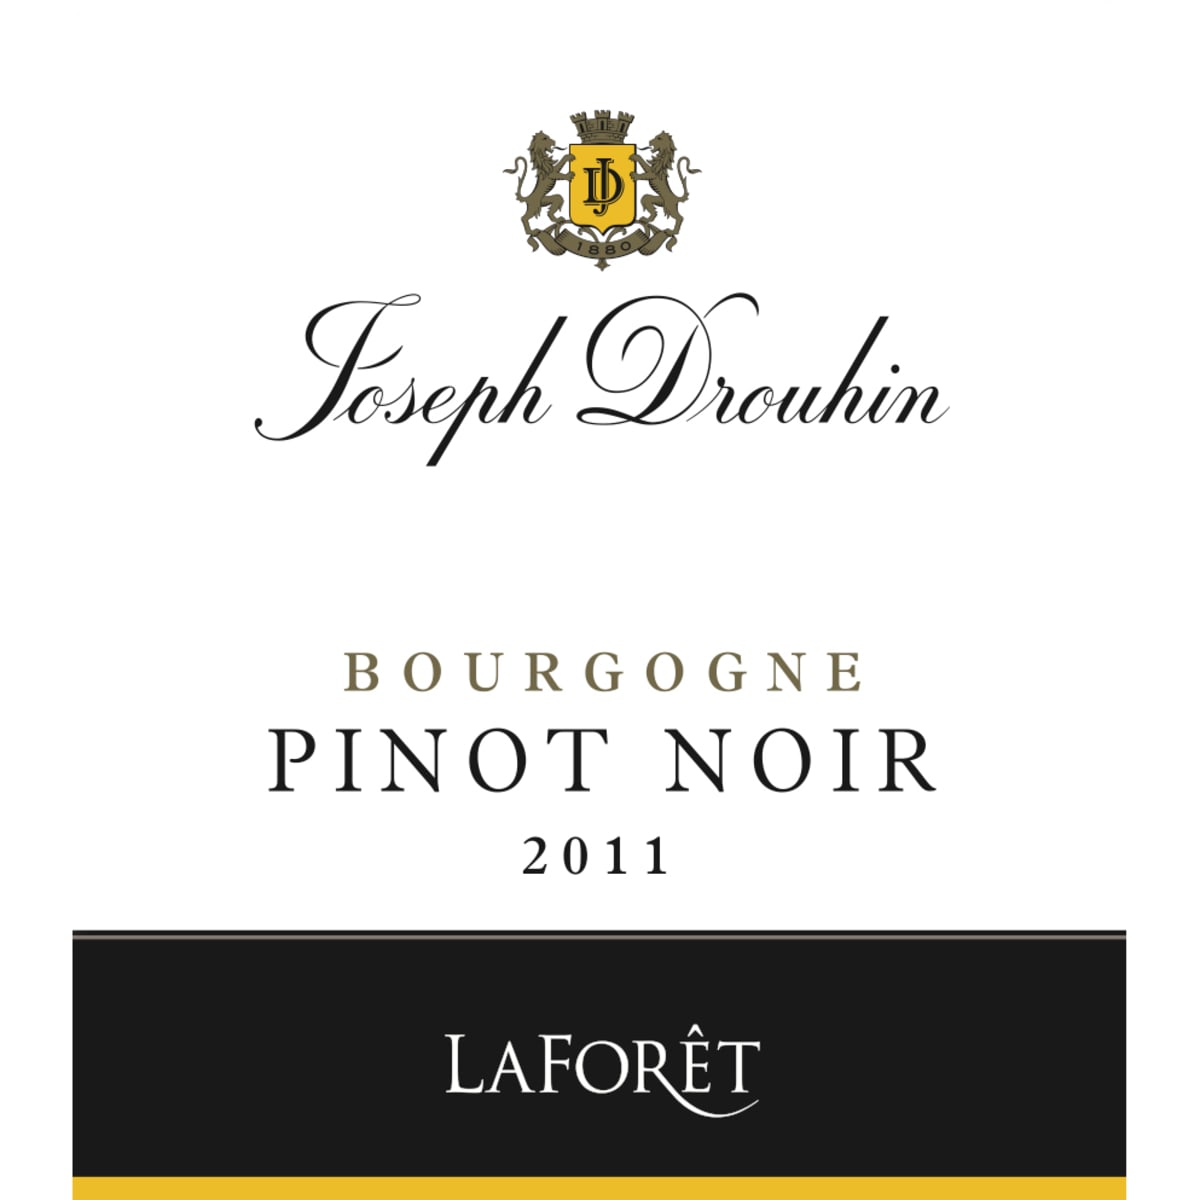 Joseph Drouhin Laforet Pinot Noir 2011 Front Label